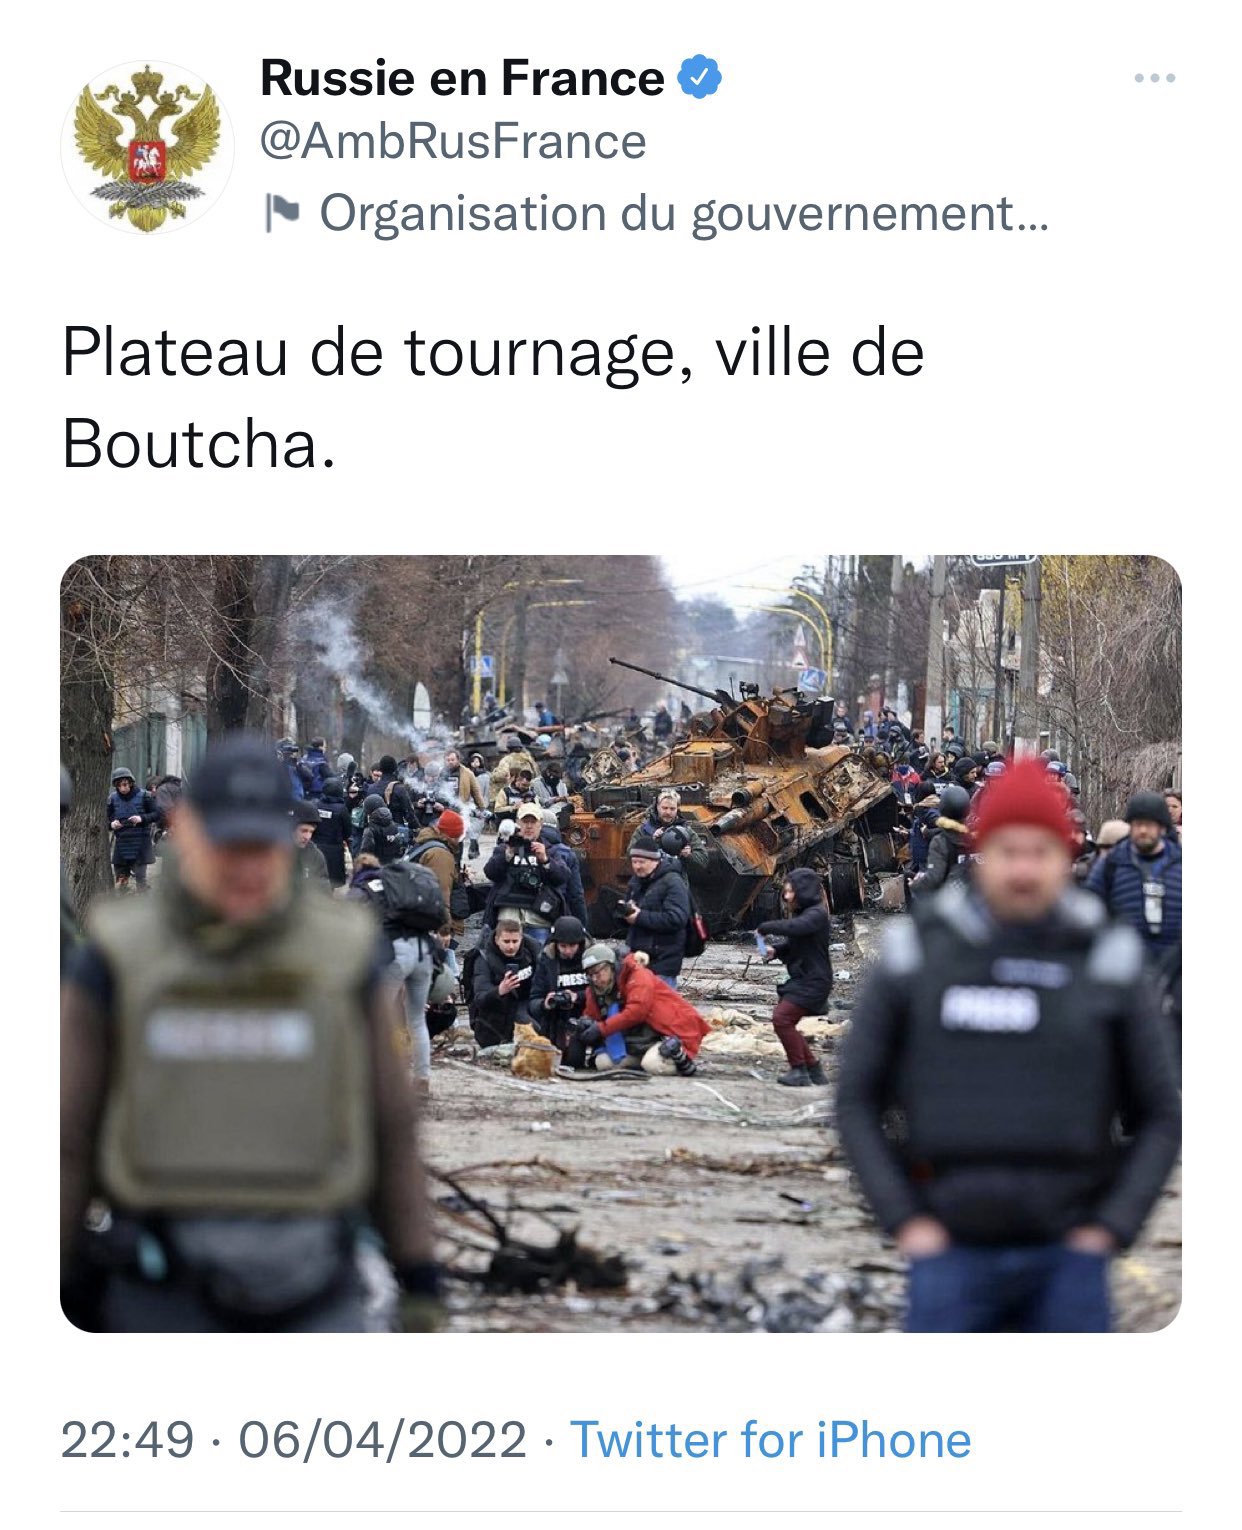 El tuit publicado, y posteriormente borrado, por la embajada rusa en Francia